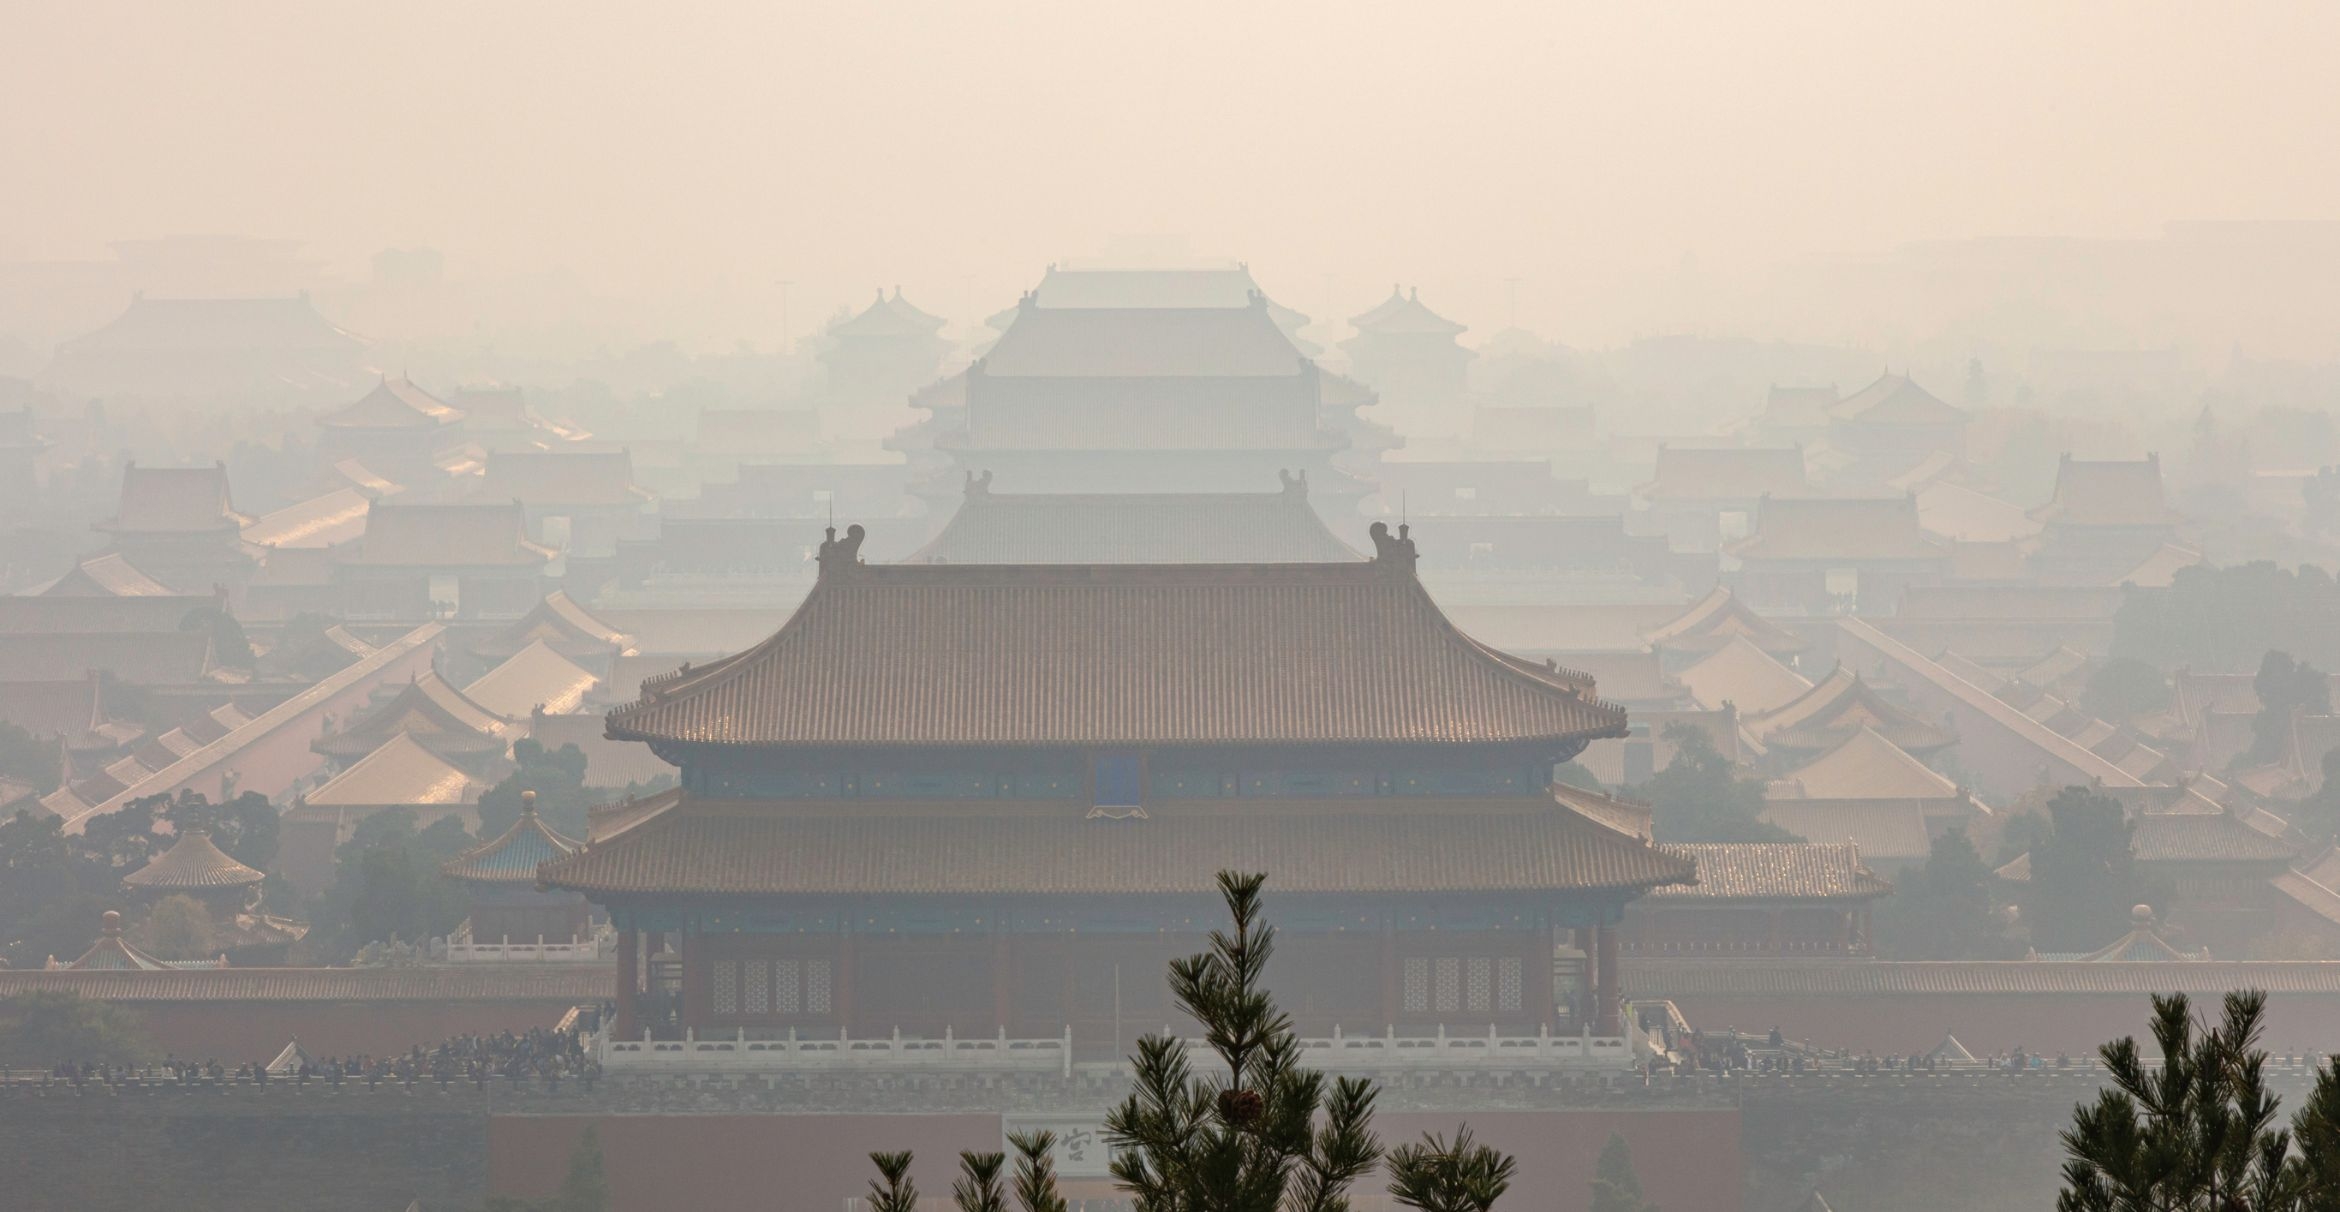 Beijing’s Forbidden City lies shrouded in industrial smog.